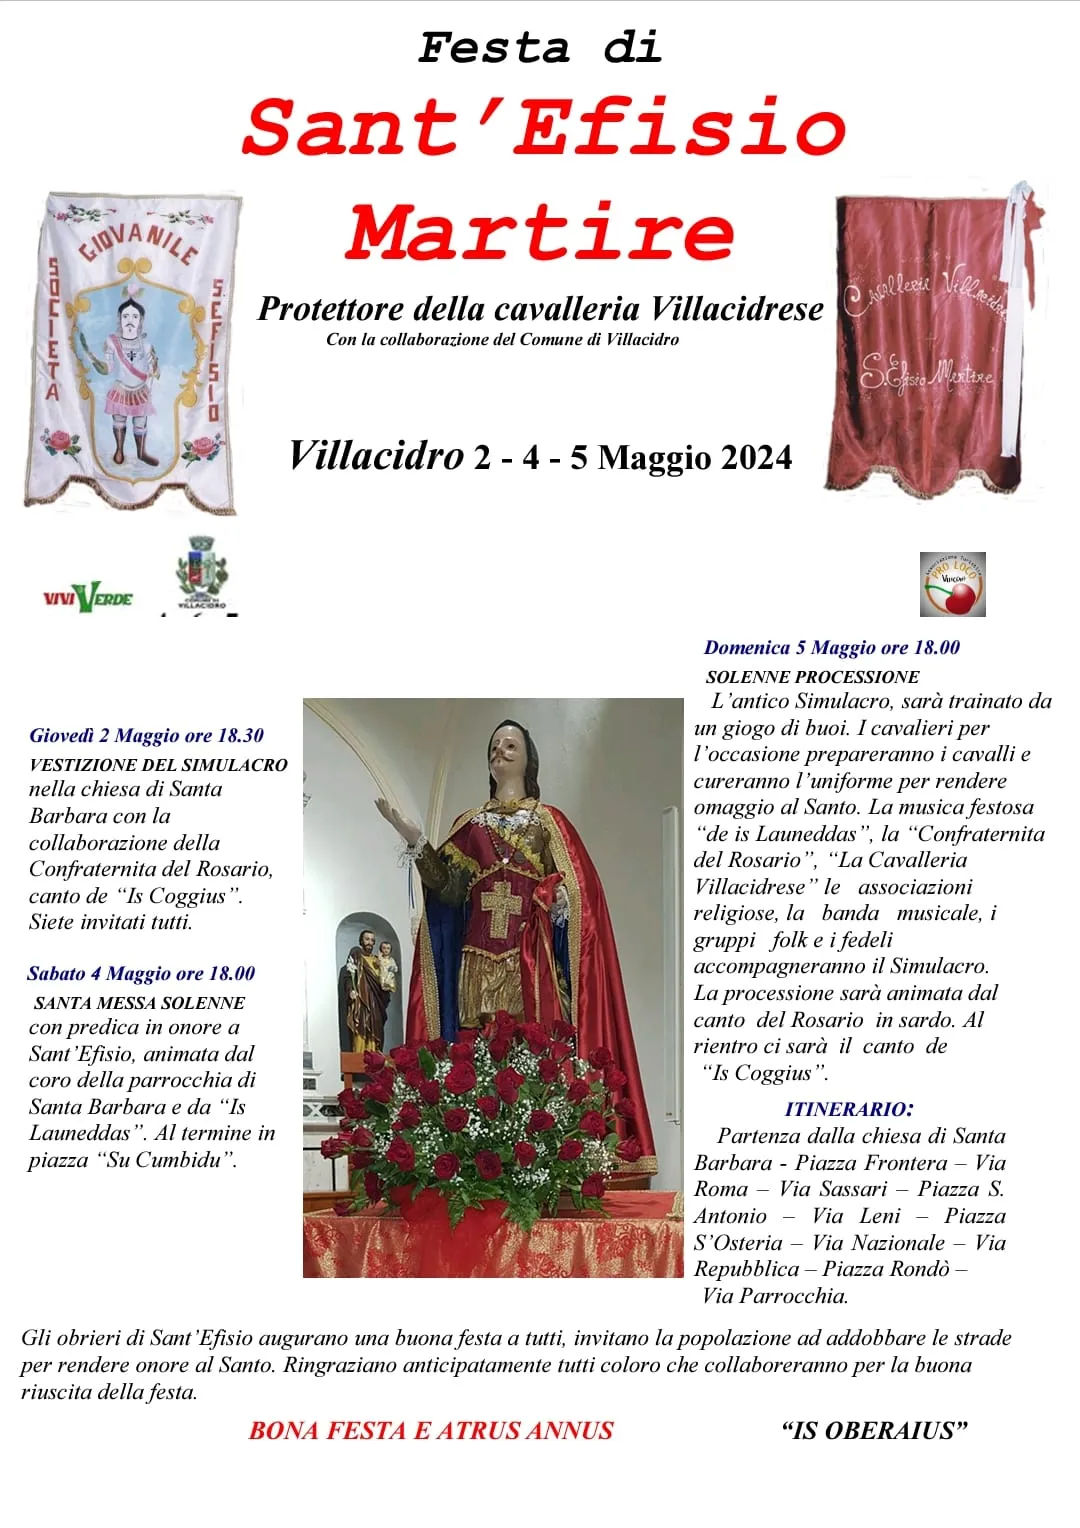 FESTA DI SANT'EFISIO MARTIRE - Protettore della Cavalleria Villacidrese. 2 - 4 e 5 Maggio 2024